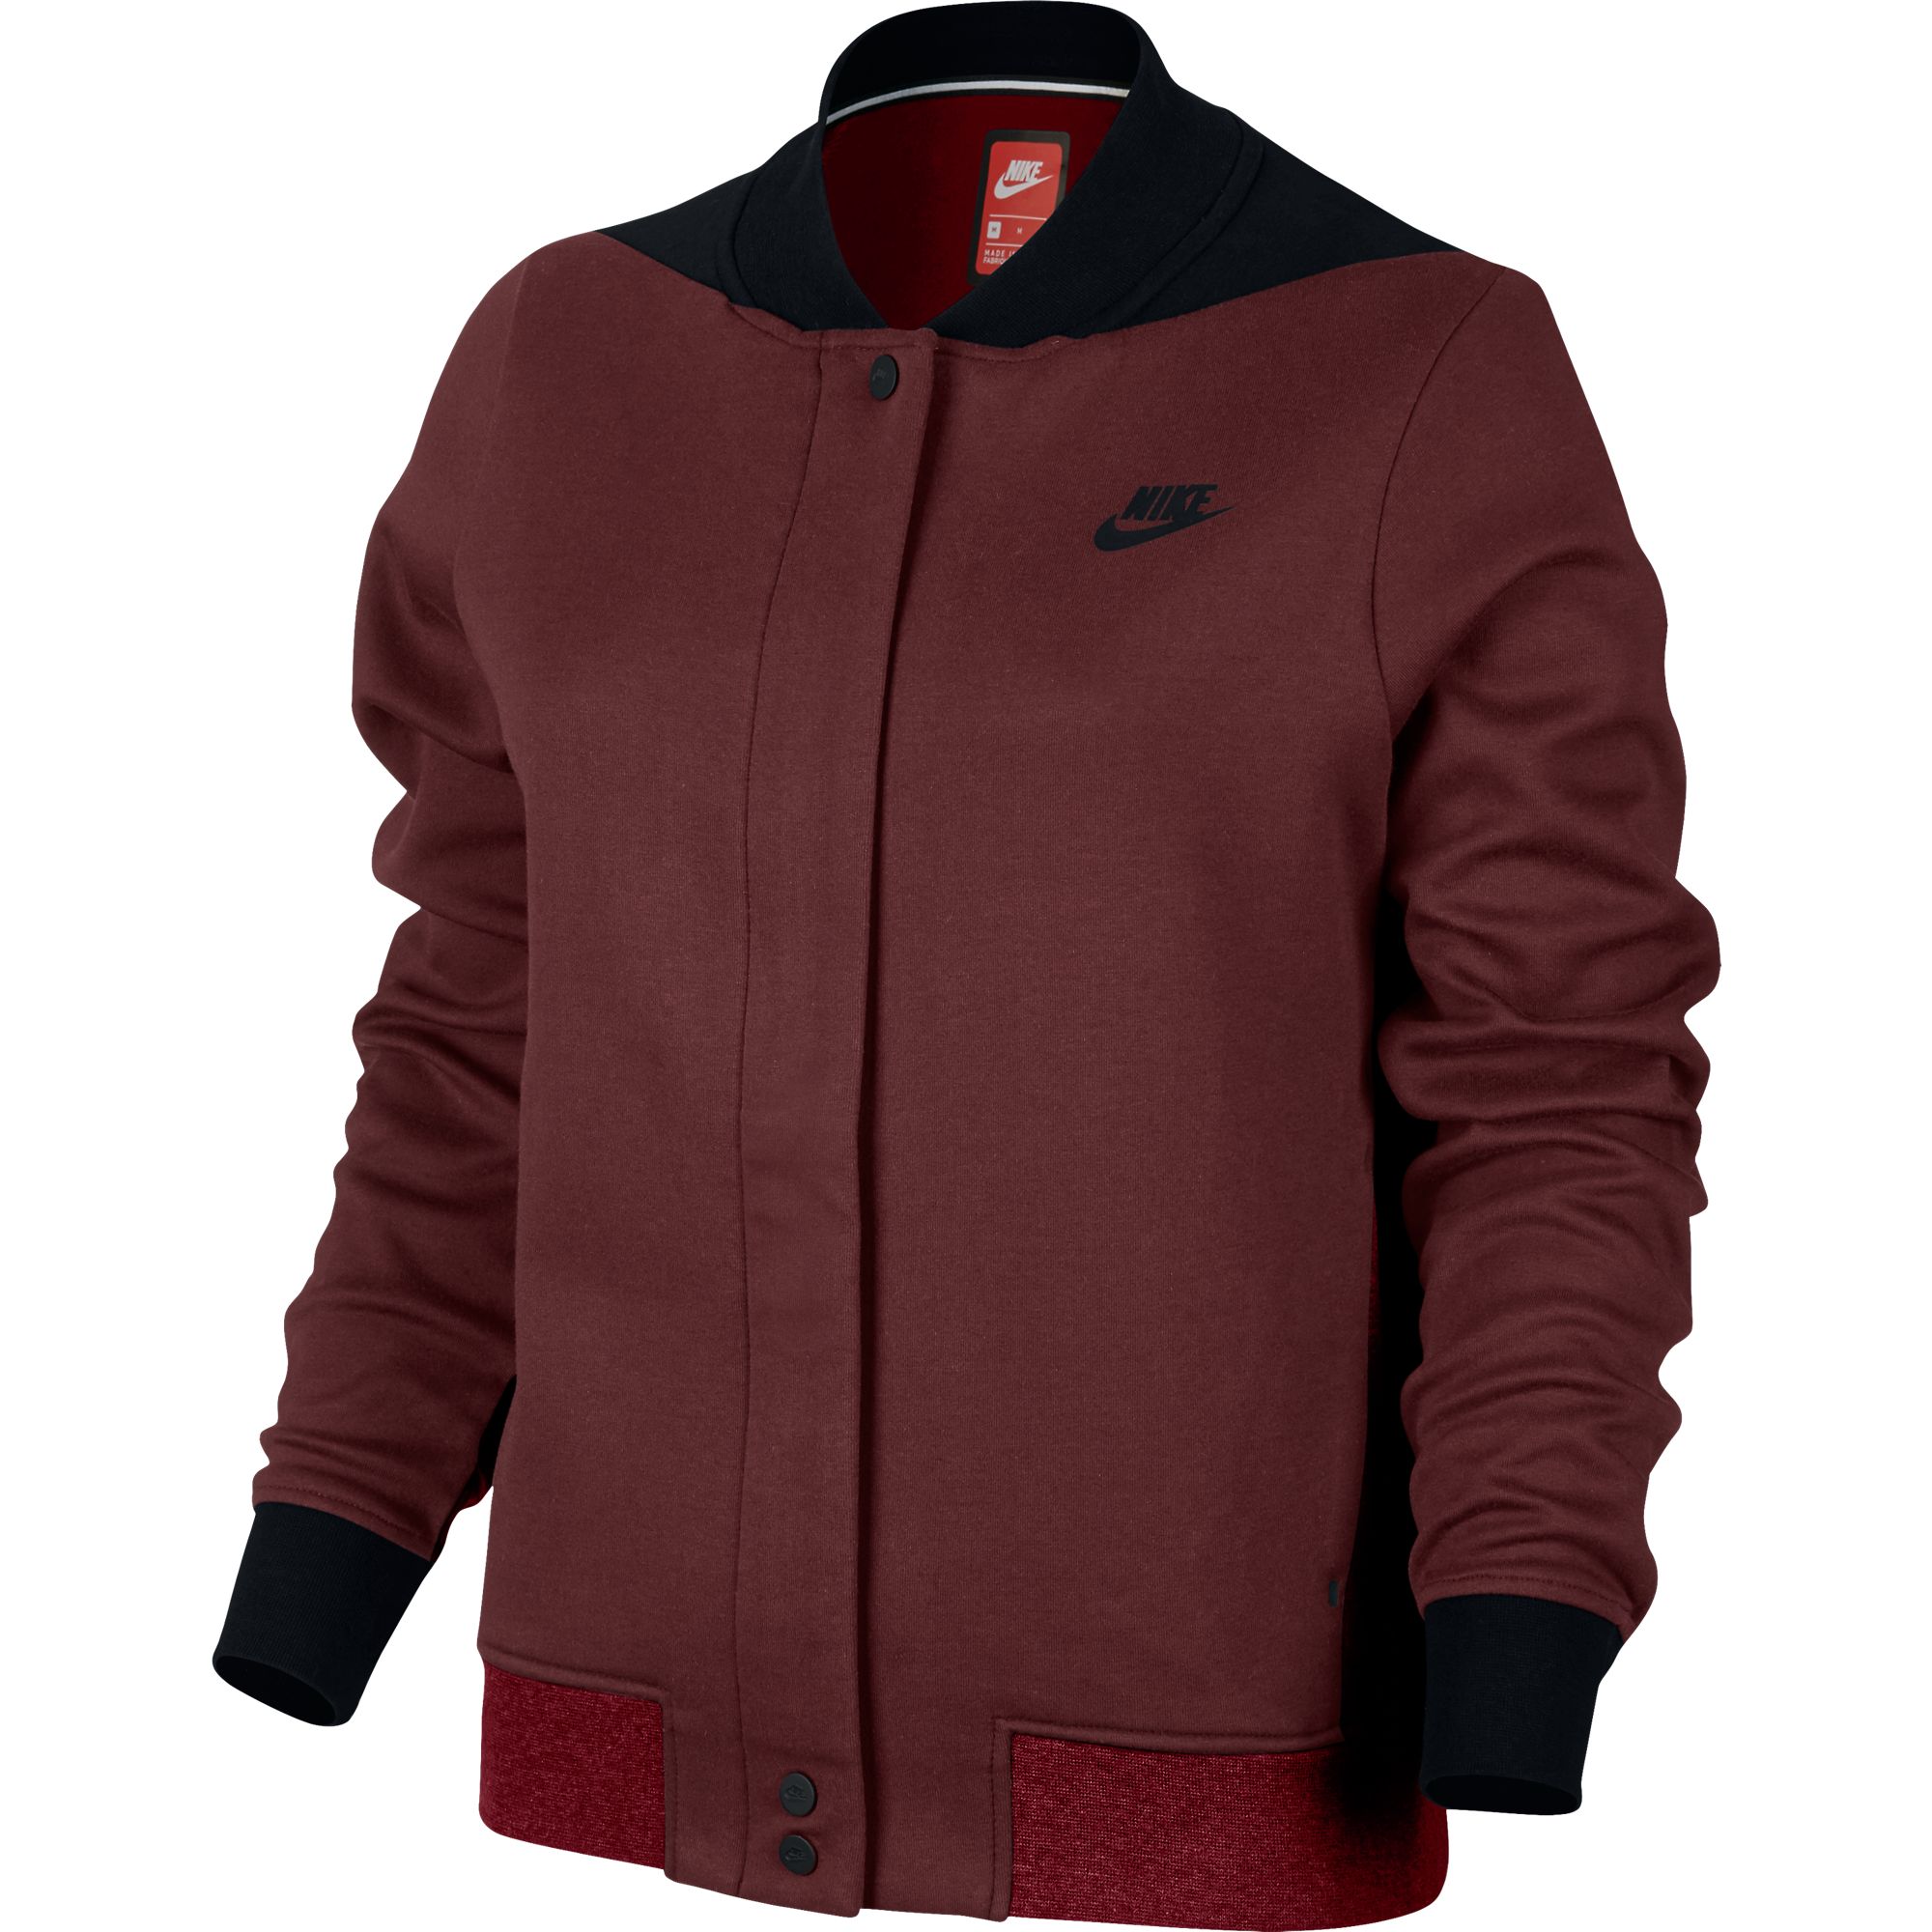 Nike Tech Fleece Destroyer Women's Jacket Burgundy 884427-608 | eBay